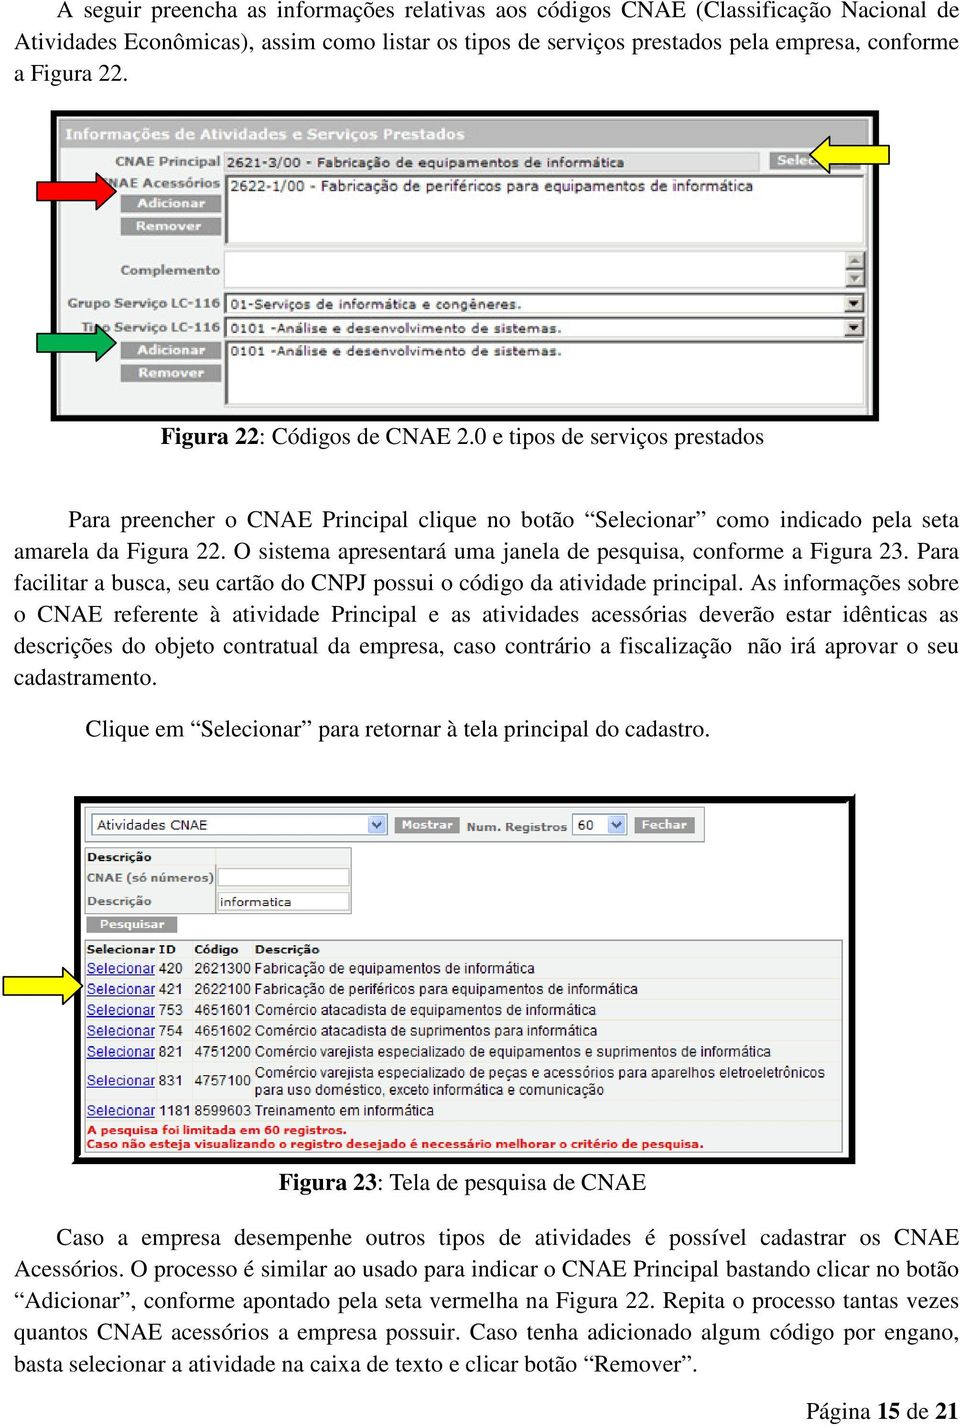 O sistema apresentará uma janela de pesquisa, conforme a Figura 23. Para facilitar a busca, seu cartão do CNPJ possui o código da atividade principal.